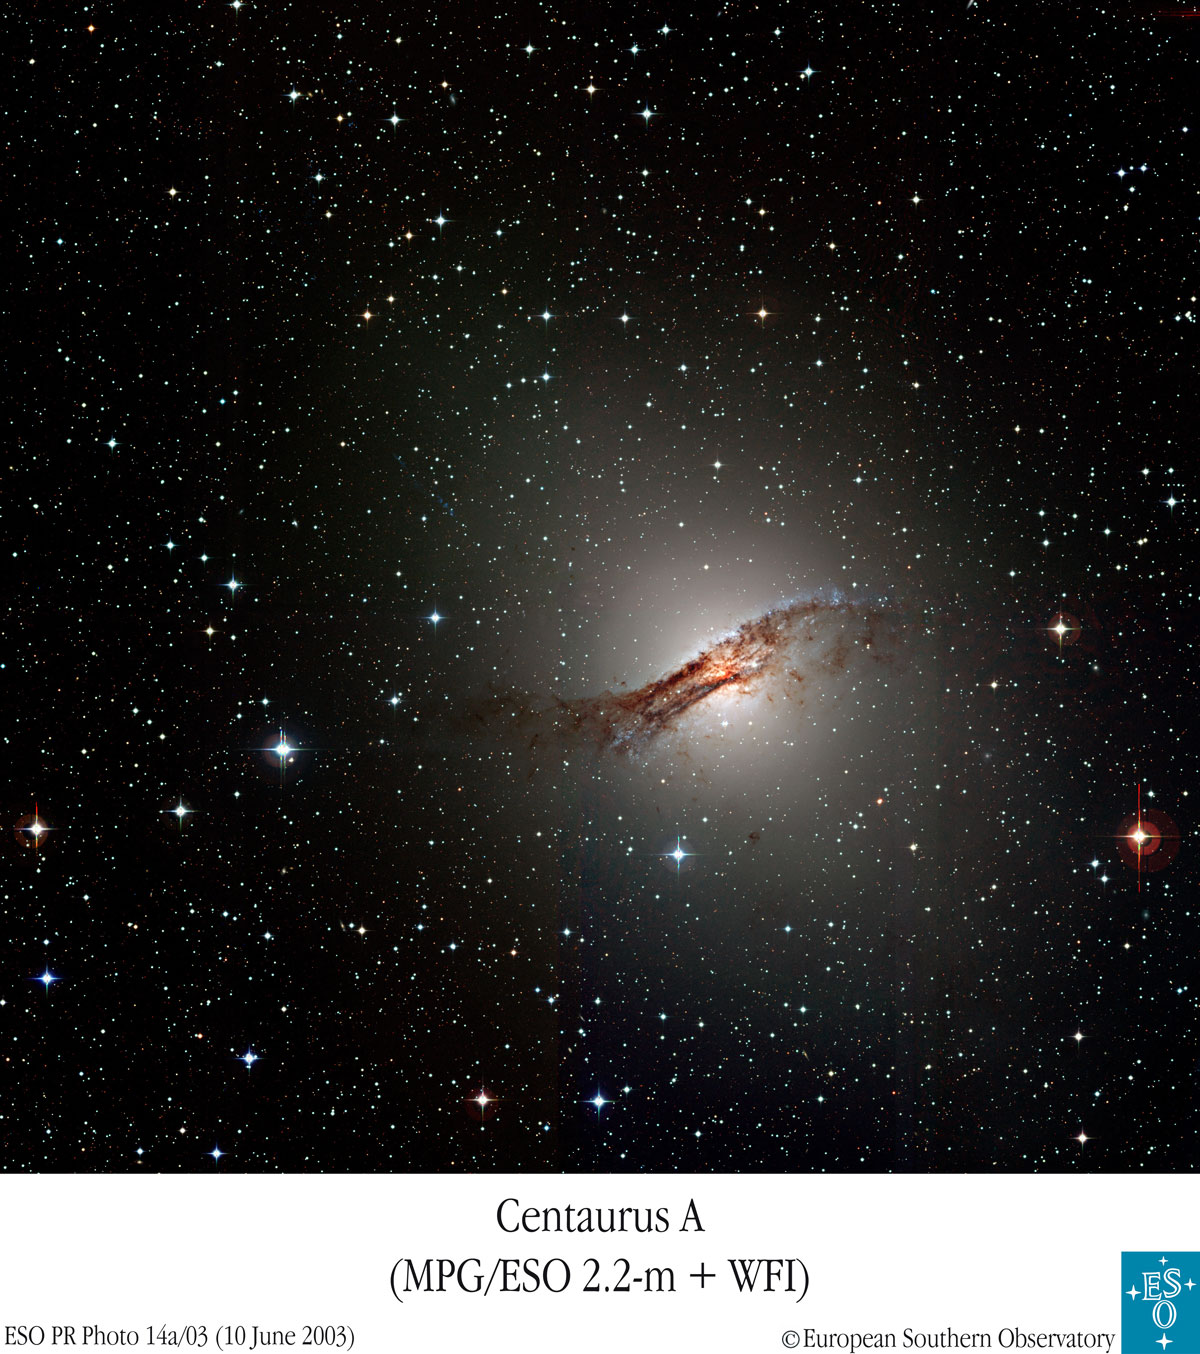 Galaktyka Centaurus A sfotografowana w zakresie optycznym. Obserwowana przez teleskopy H.E.S.S. emisja fal gamma pochodzi z jej centralnego obszaru, gdzie od czarnej dziury w samym centrum rozciąga się niewidoczny tu dżet. Źródło: APOD.